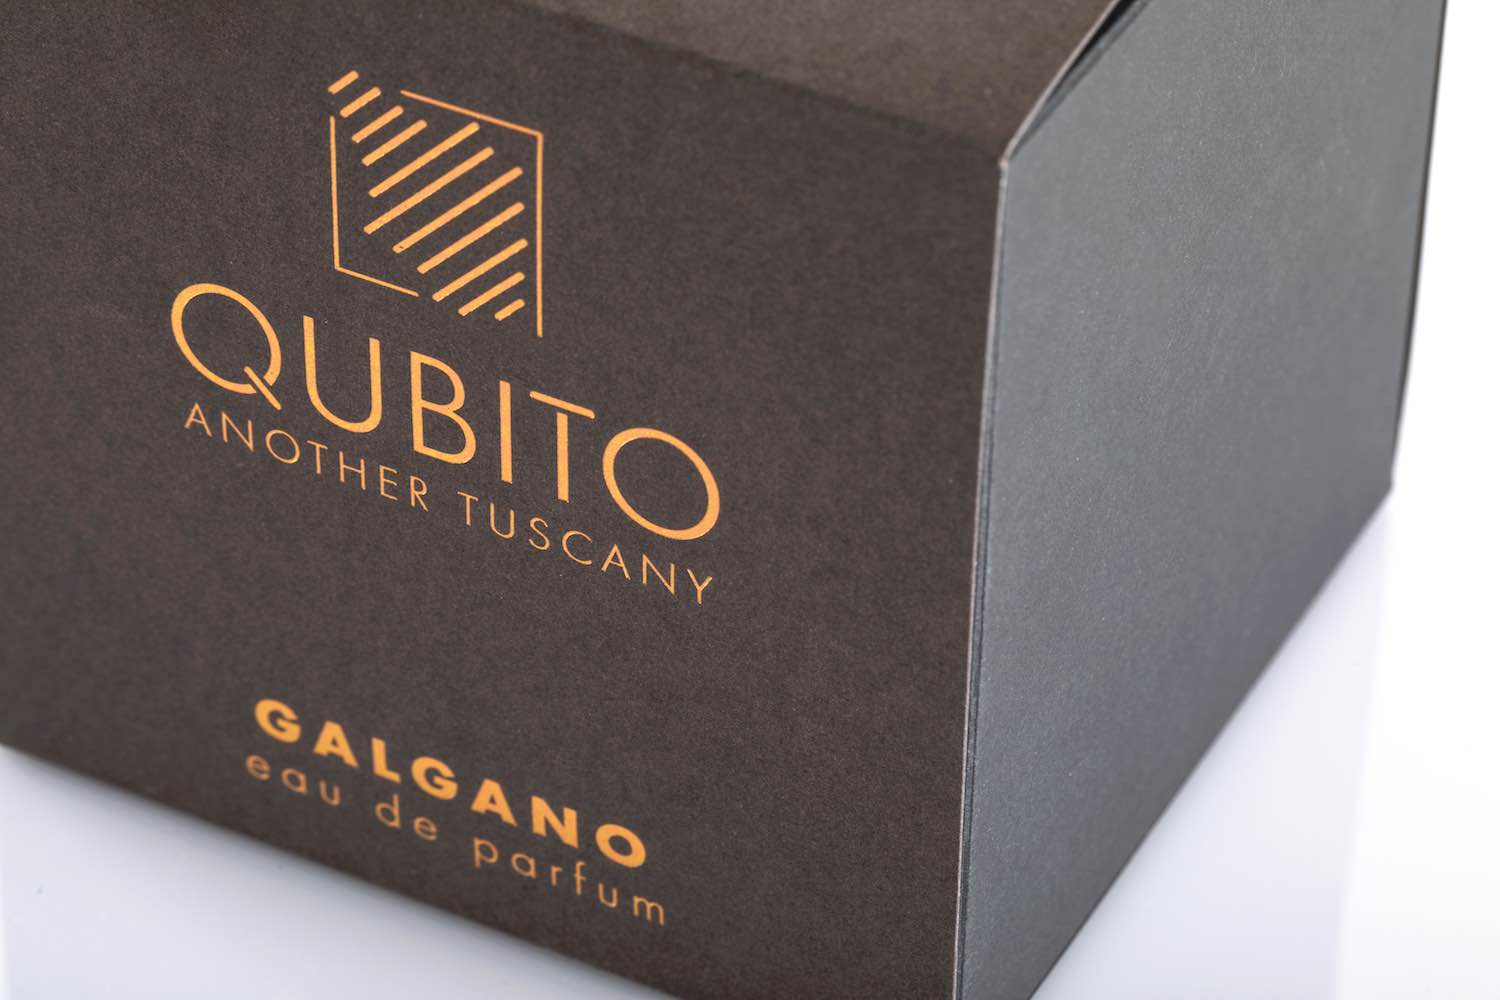 Qubito è un brand di profumi personali e fragranze per la casa, che si ispirano alle essenze più intime della Toscana, una terra libera e selvaggia.